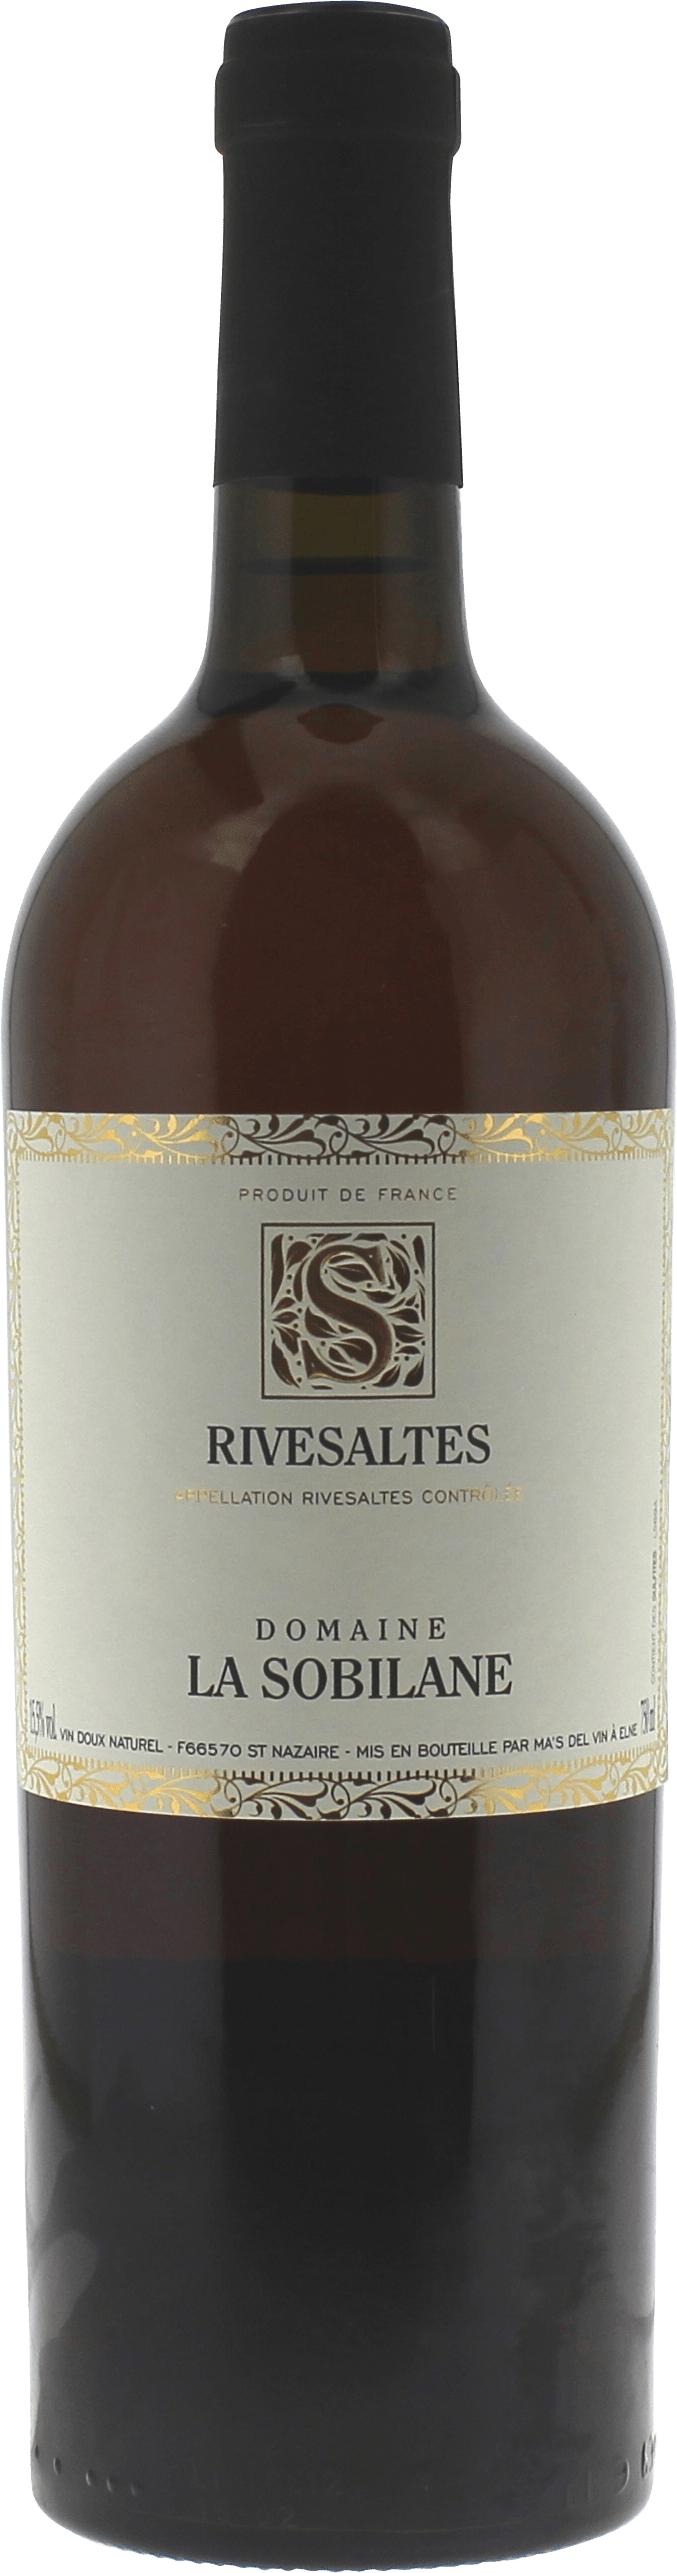 Rivesaltes domaine la sobilane 1963 Vin doux naturel Rivesaltes, Vin doux naturel